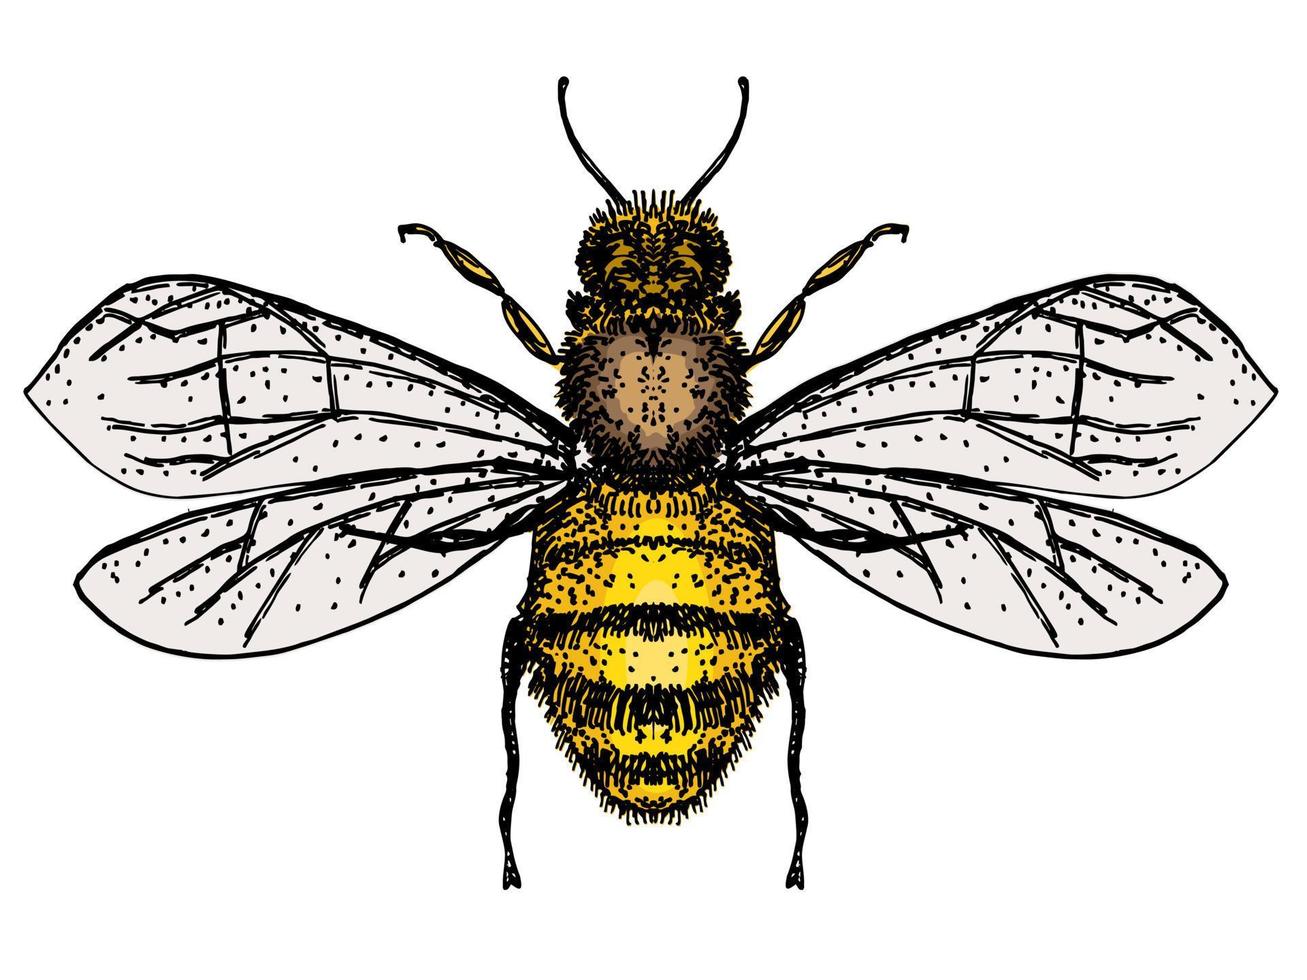 Bienenisolat auf weißem Hintergrund. Bienenlogo, handgezeichnete Skizze der Biene vektor